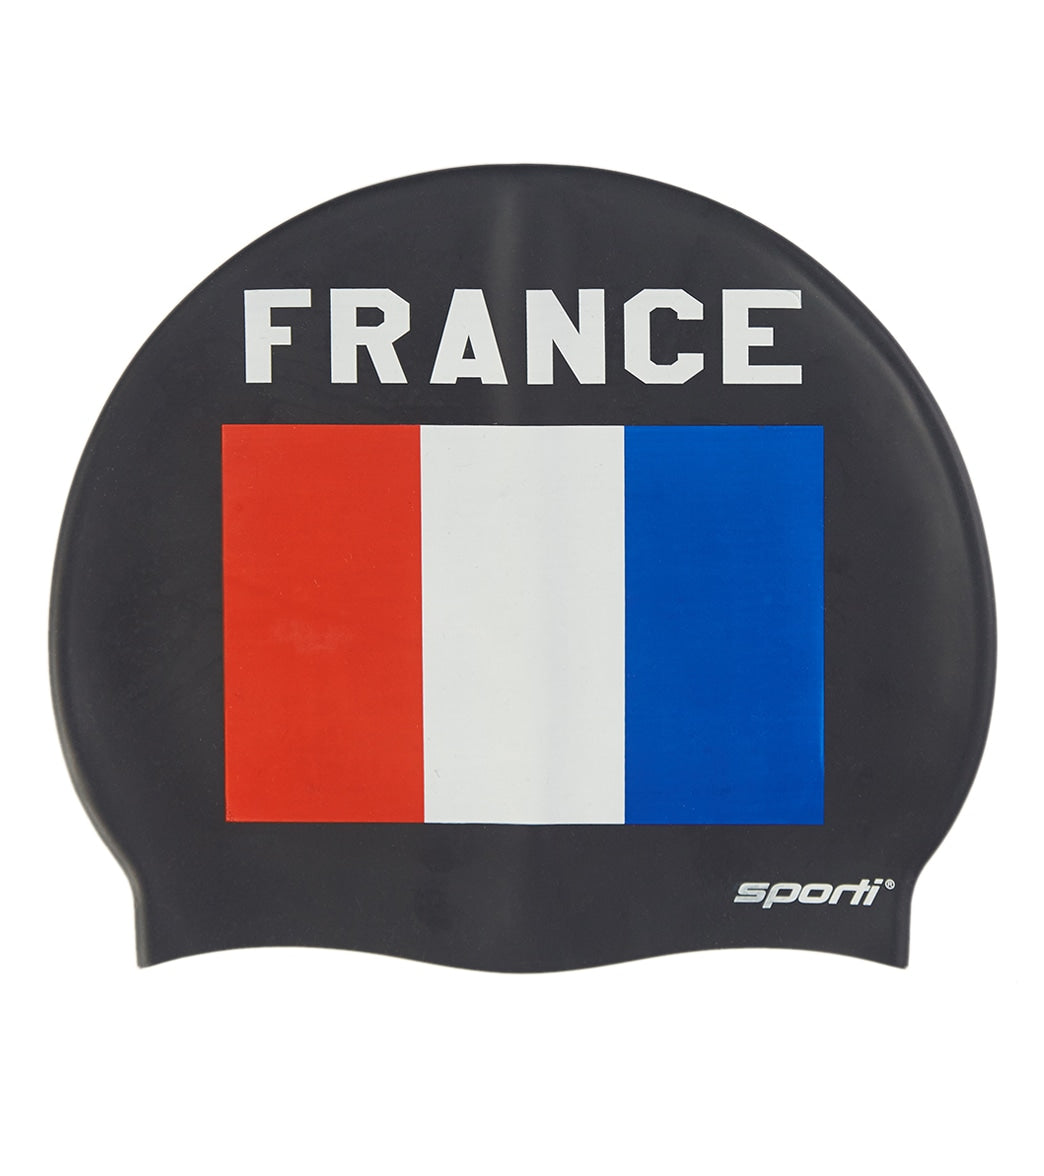 Sporti France Silicone Swim Cap at SwimOutlet.com